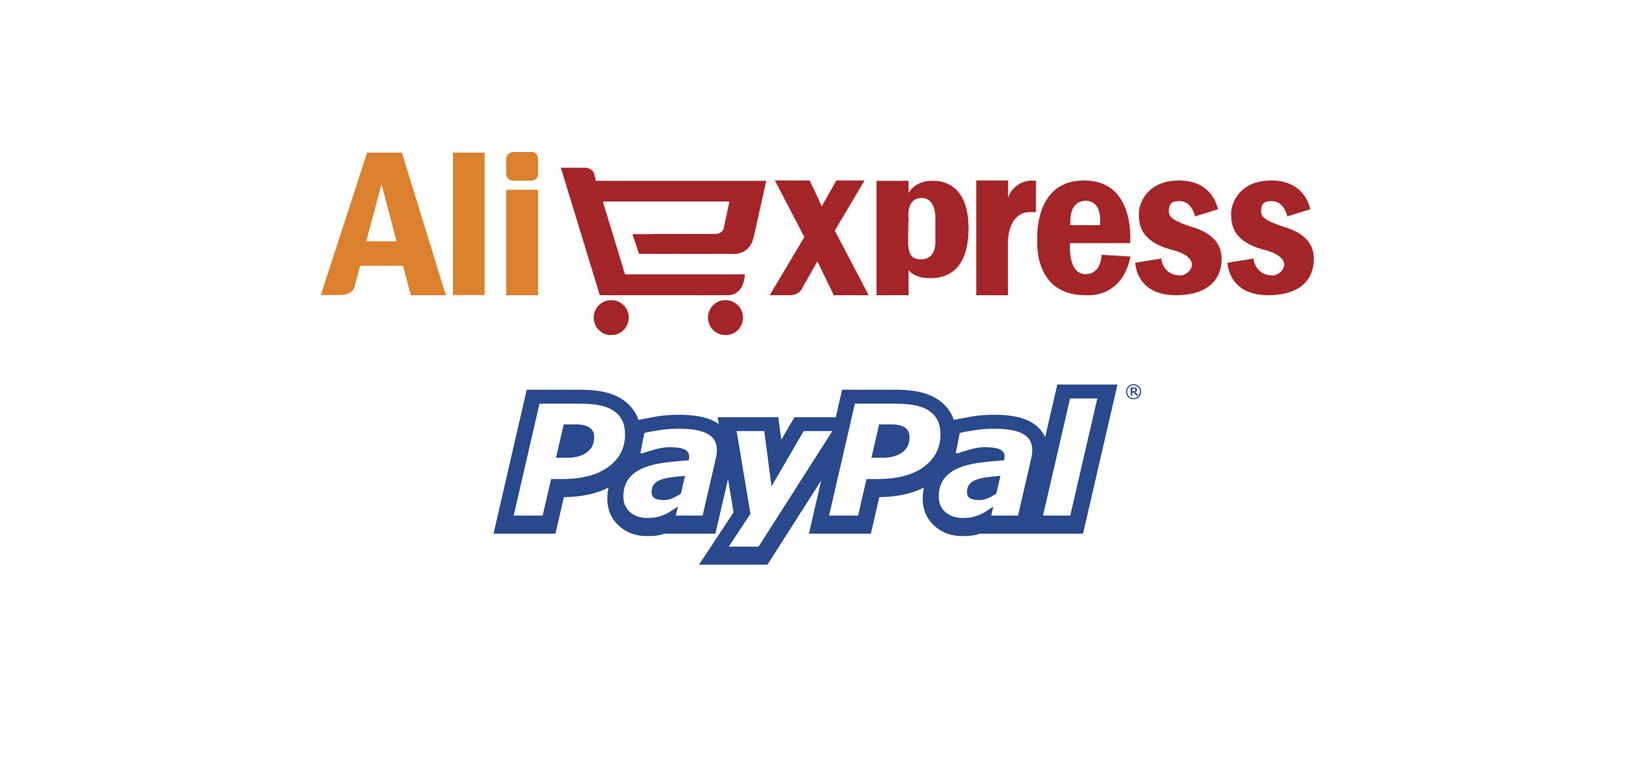 Можно ли оплатить покупку на aliexpress через paypal?